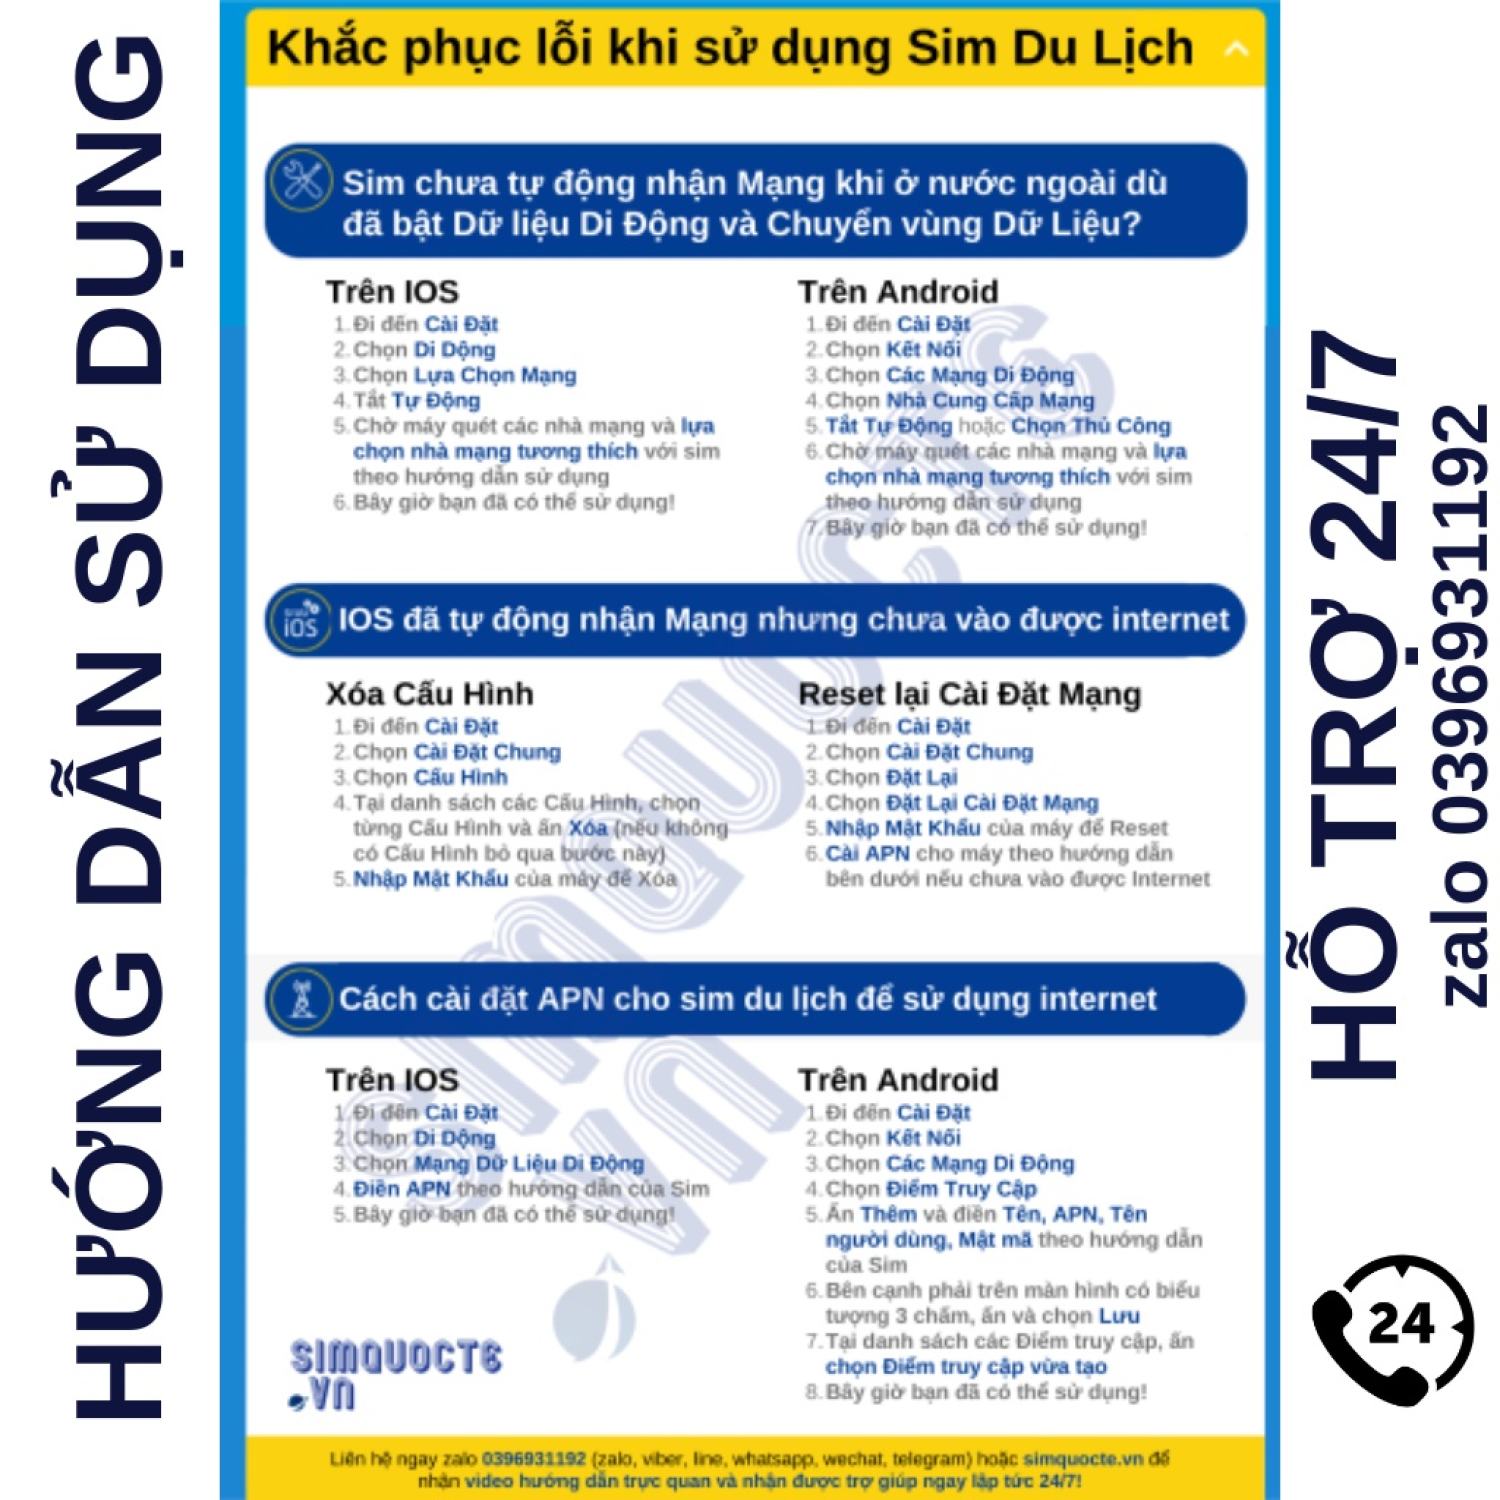 Thẻ vào mạng 4G Sim du lịch Hàn quốc dung lượng cao kèm nghe gọi hãng China Unicom